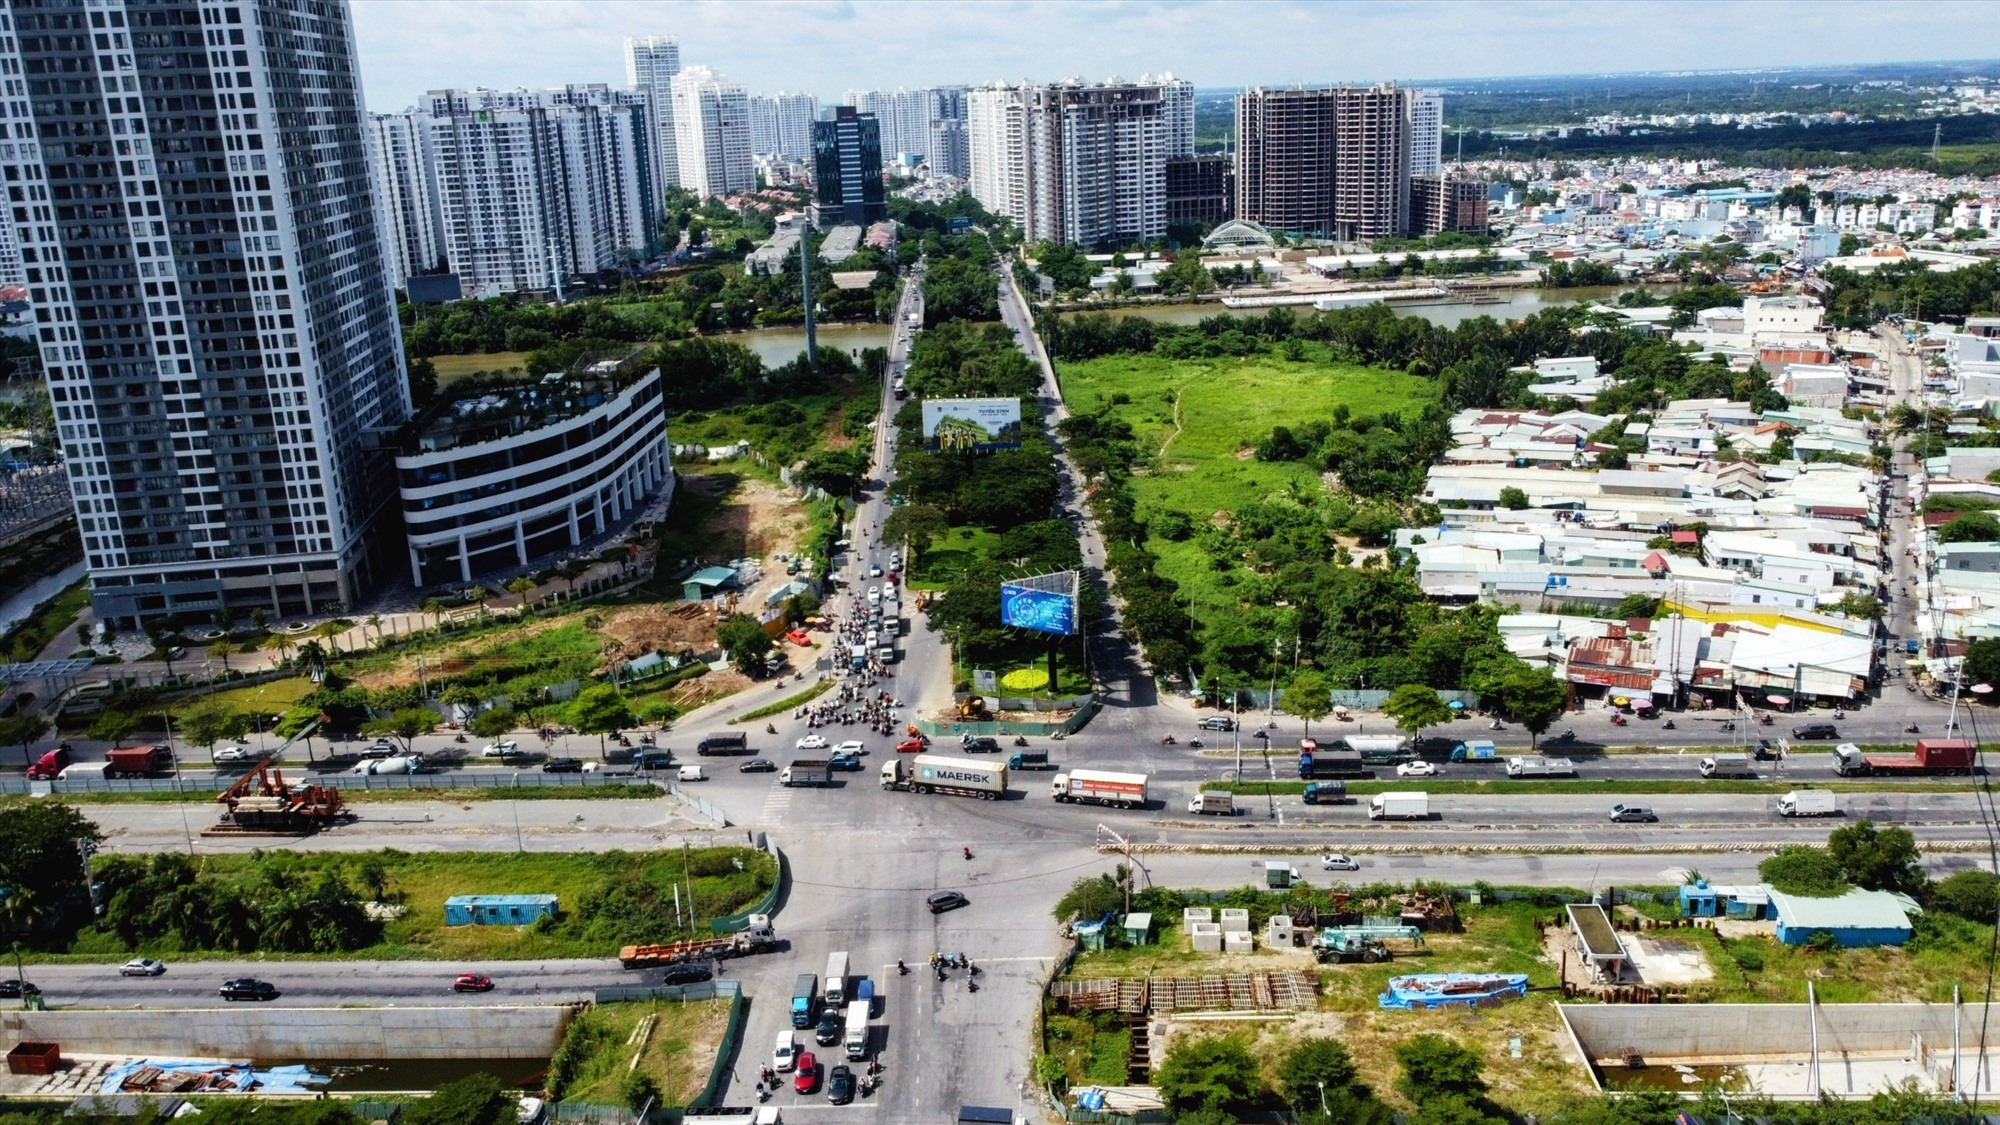 Dự án mở rộng trục đường Bắc - Nam (từ Nguyễn Văn Linh - nút giao Cầu Bà Chiêm) dài 7,5 km, dự kiến mở rộng từ 4 lên 10 làn xe với tổng nguồn vốn 4.500 tỉ đồng. Ở dự án này, TP đề xuất ngân sách đầu tư tỉ lệ 70%.